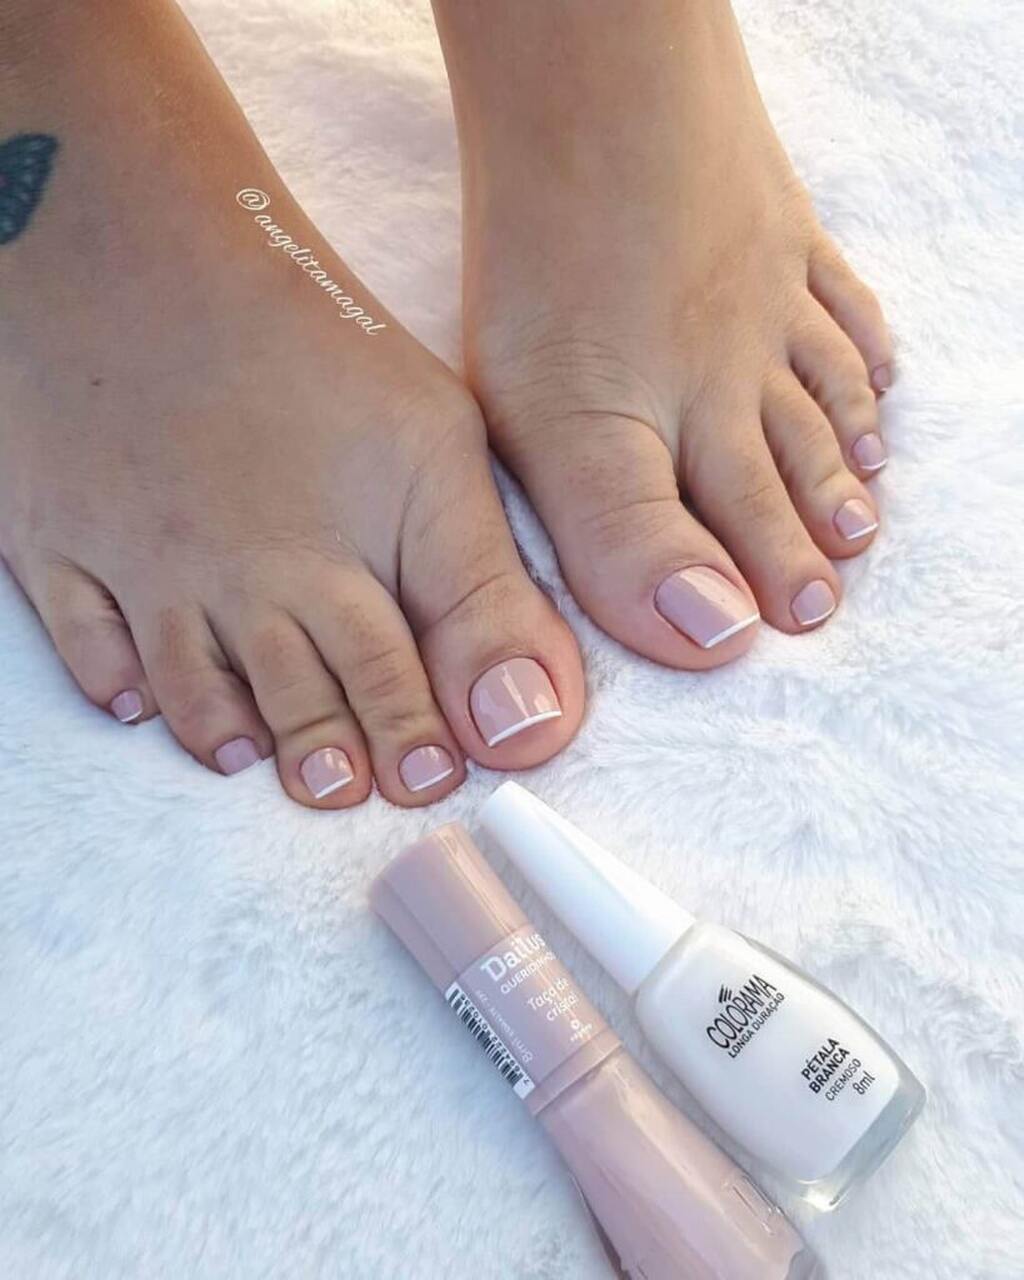 Unhas dos pés delicadas com esmalte nude e francesinha branca